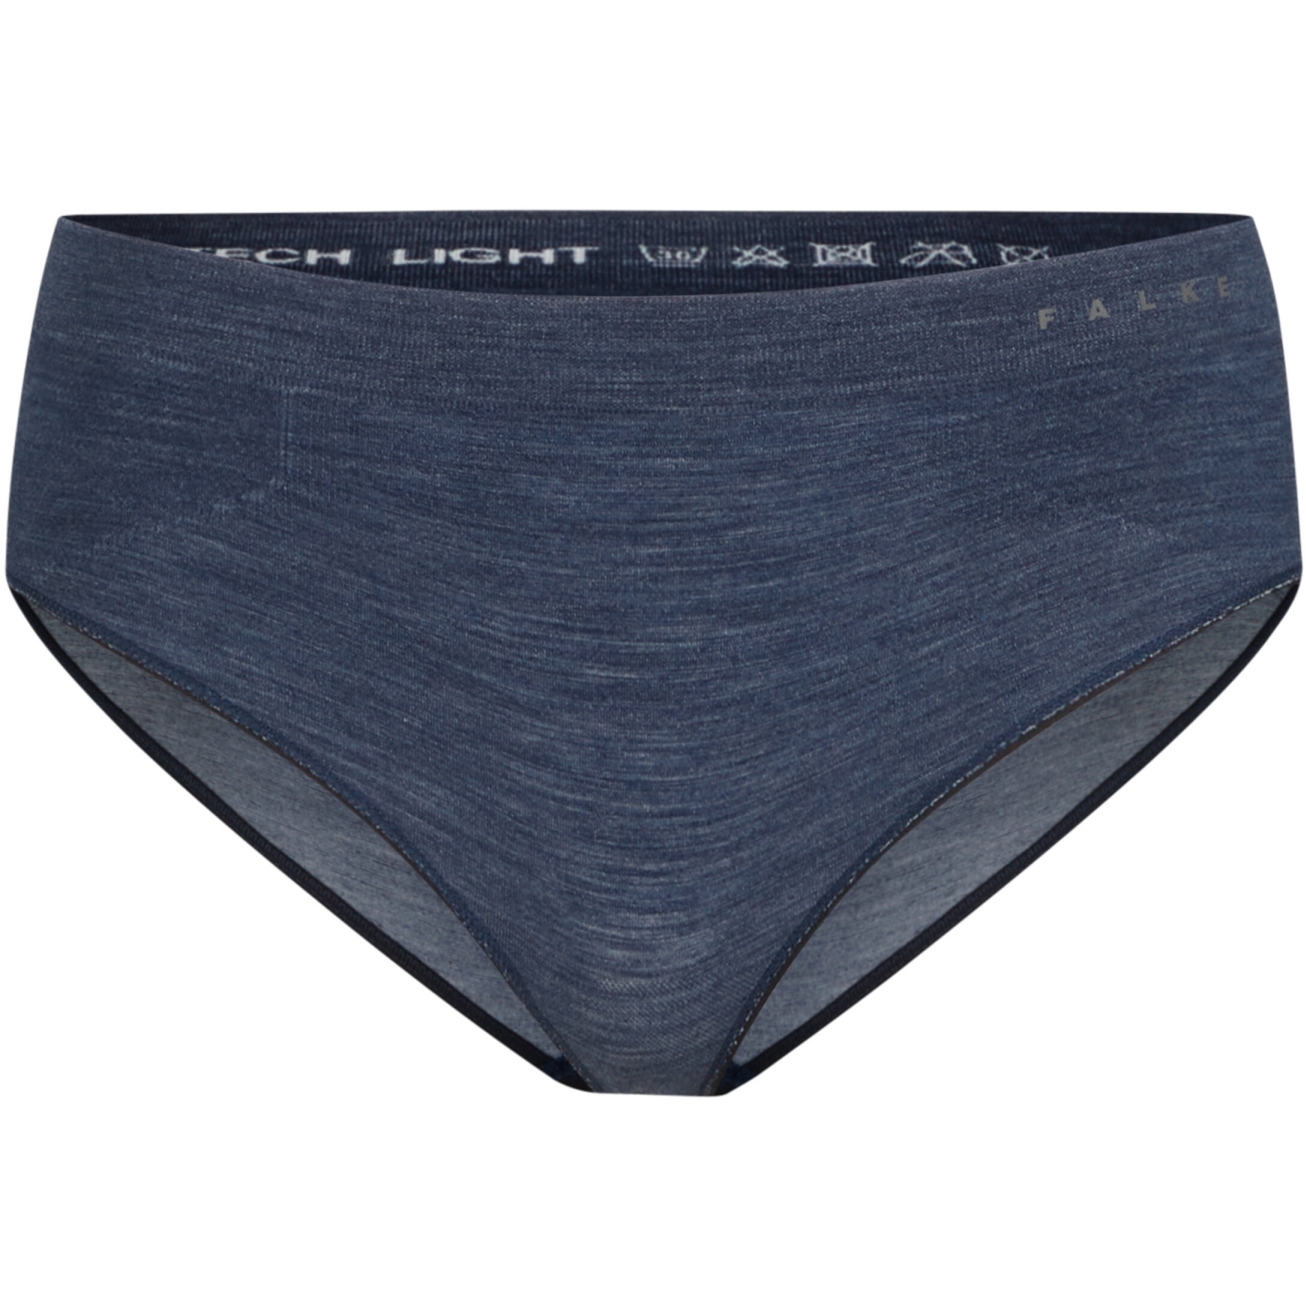 Produktbild von Falke Wool-Tech Light Trend Panties Damen - space blue 6116